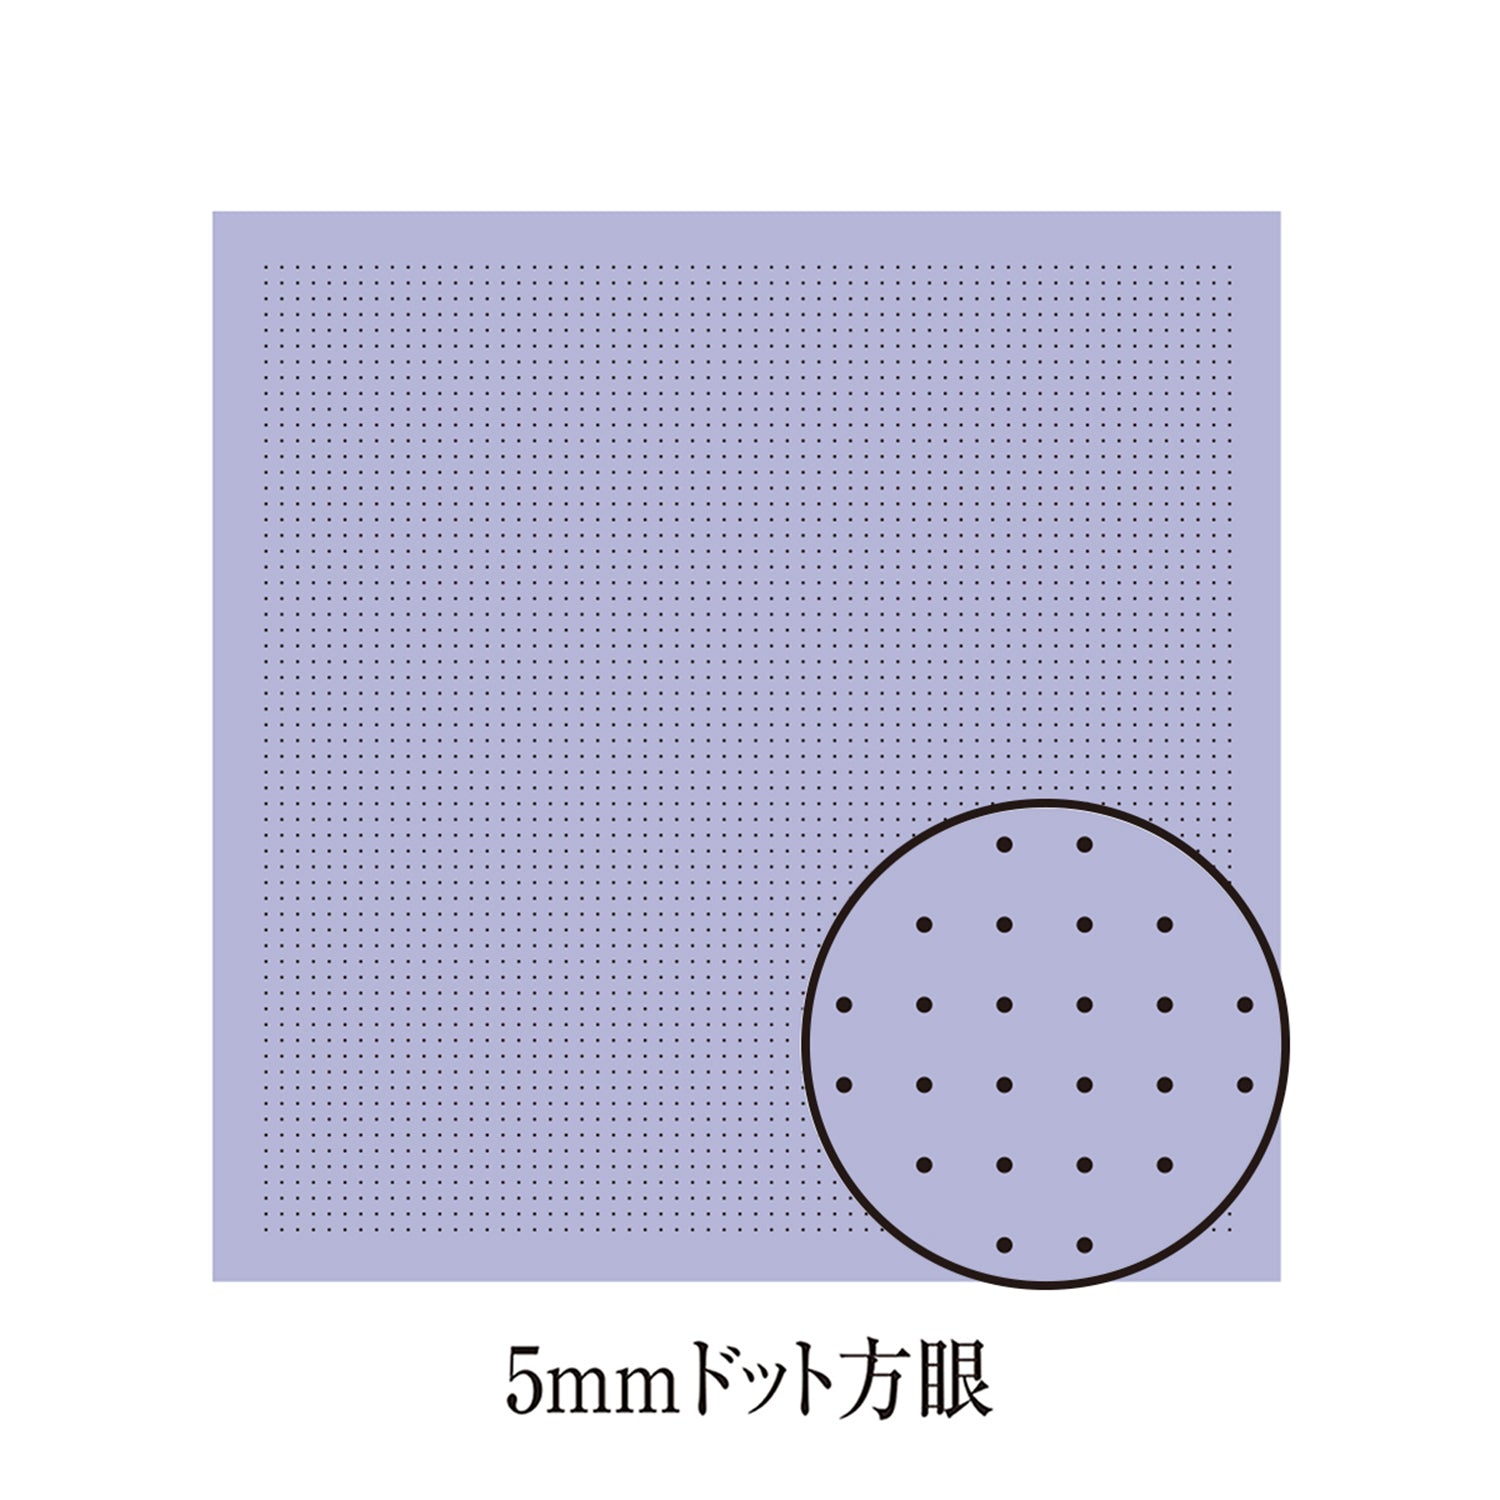 Sashiko Fabric - Pre-printed Sashiko Fabric - with DOTTED GRID for